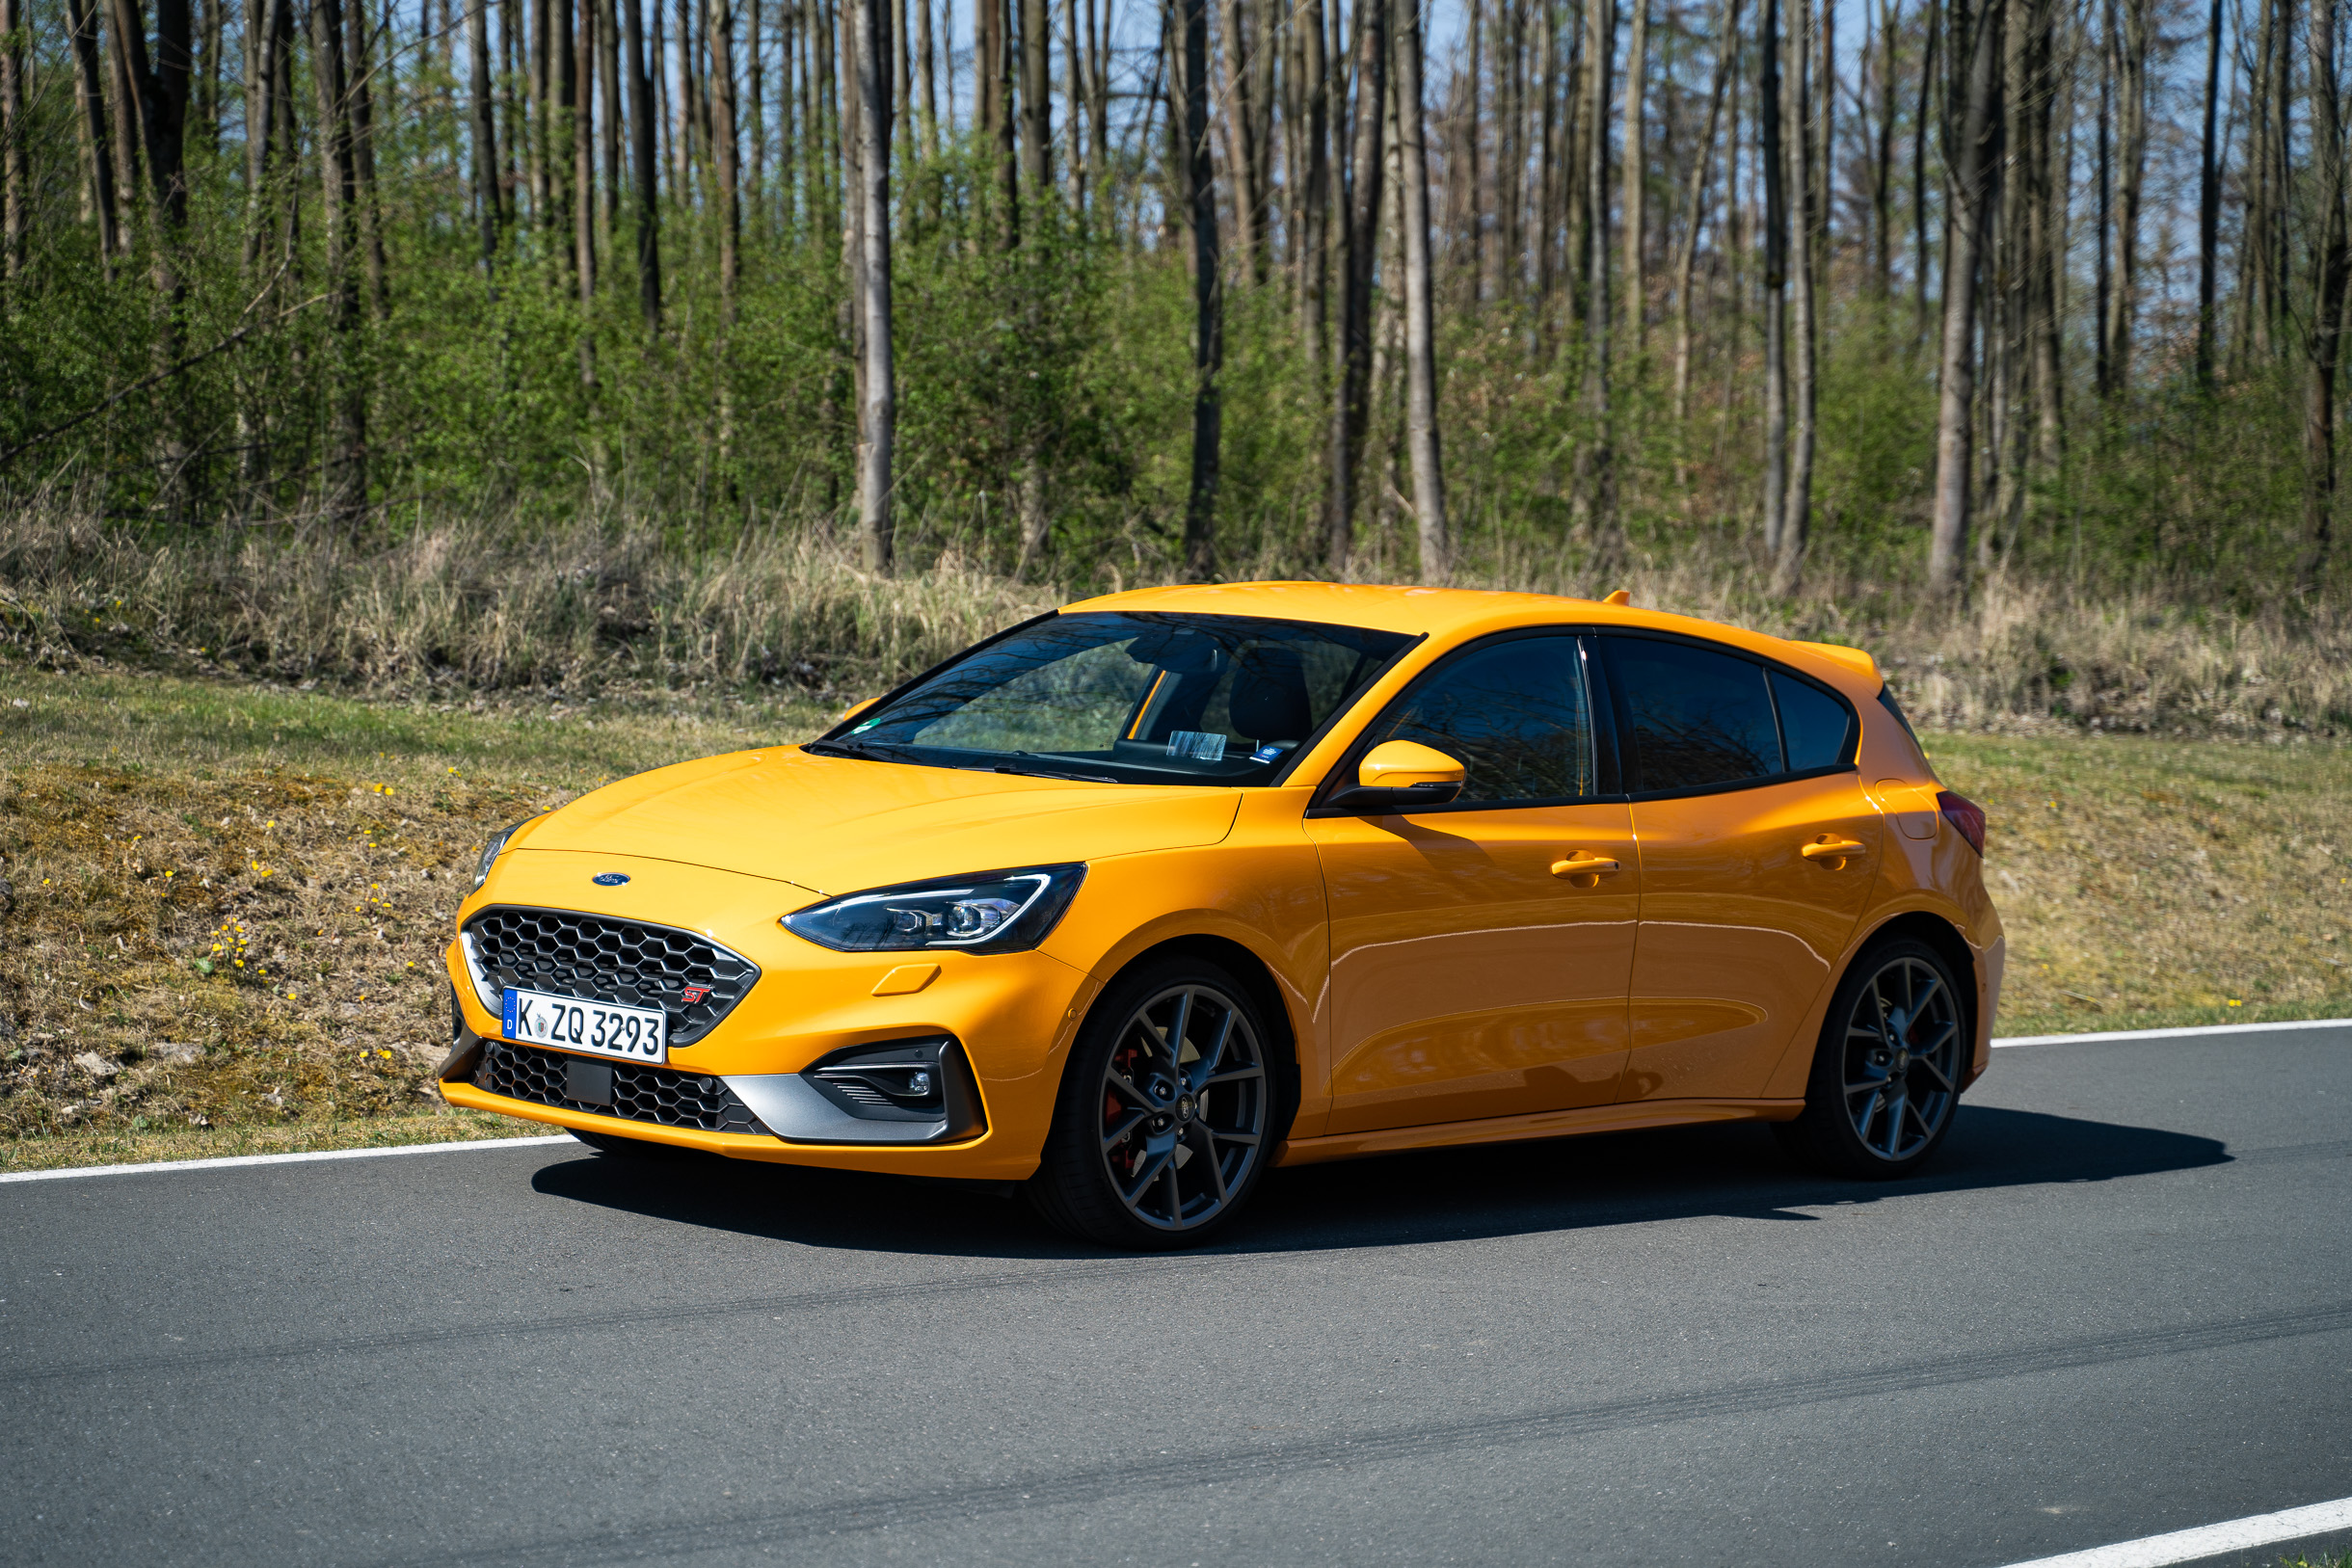 Ins Gelbe getroffen: Ford Focus ST im Test